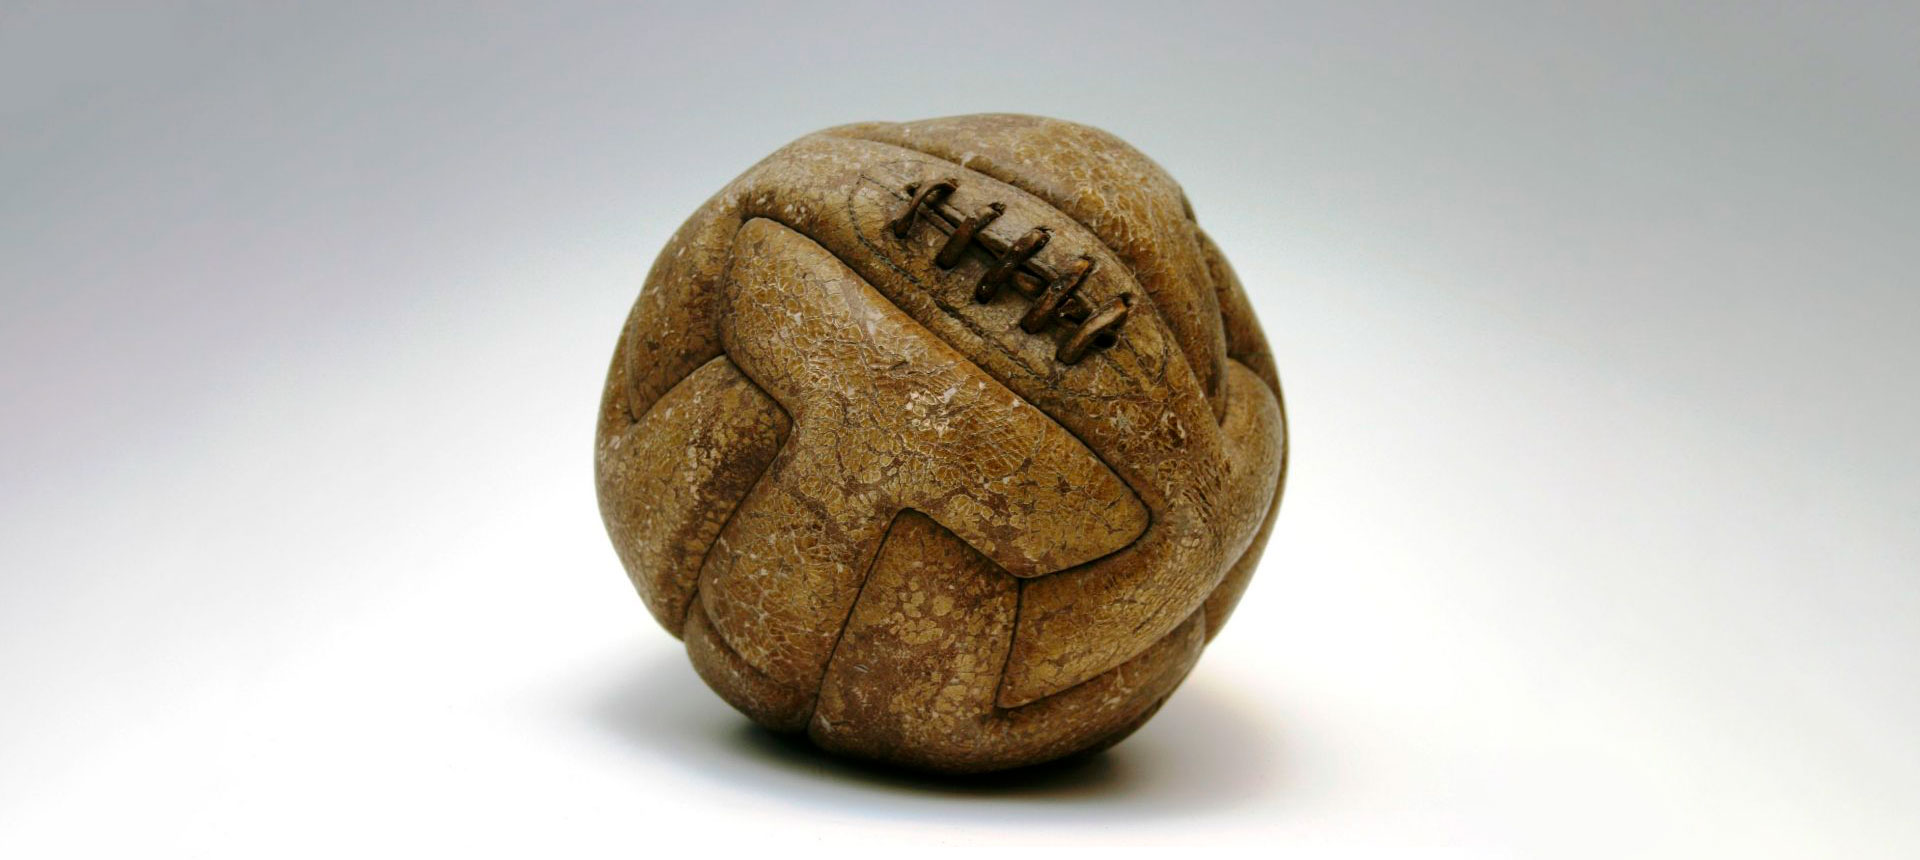 Кто / Где / Когда придумал / изобрел футбольный мяч?